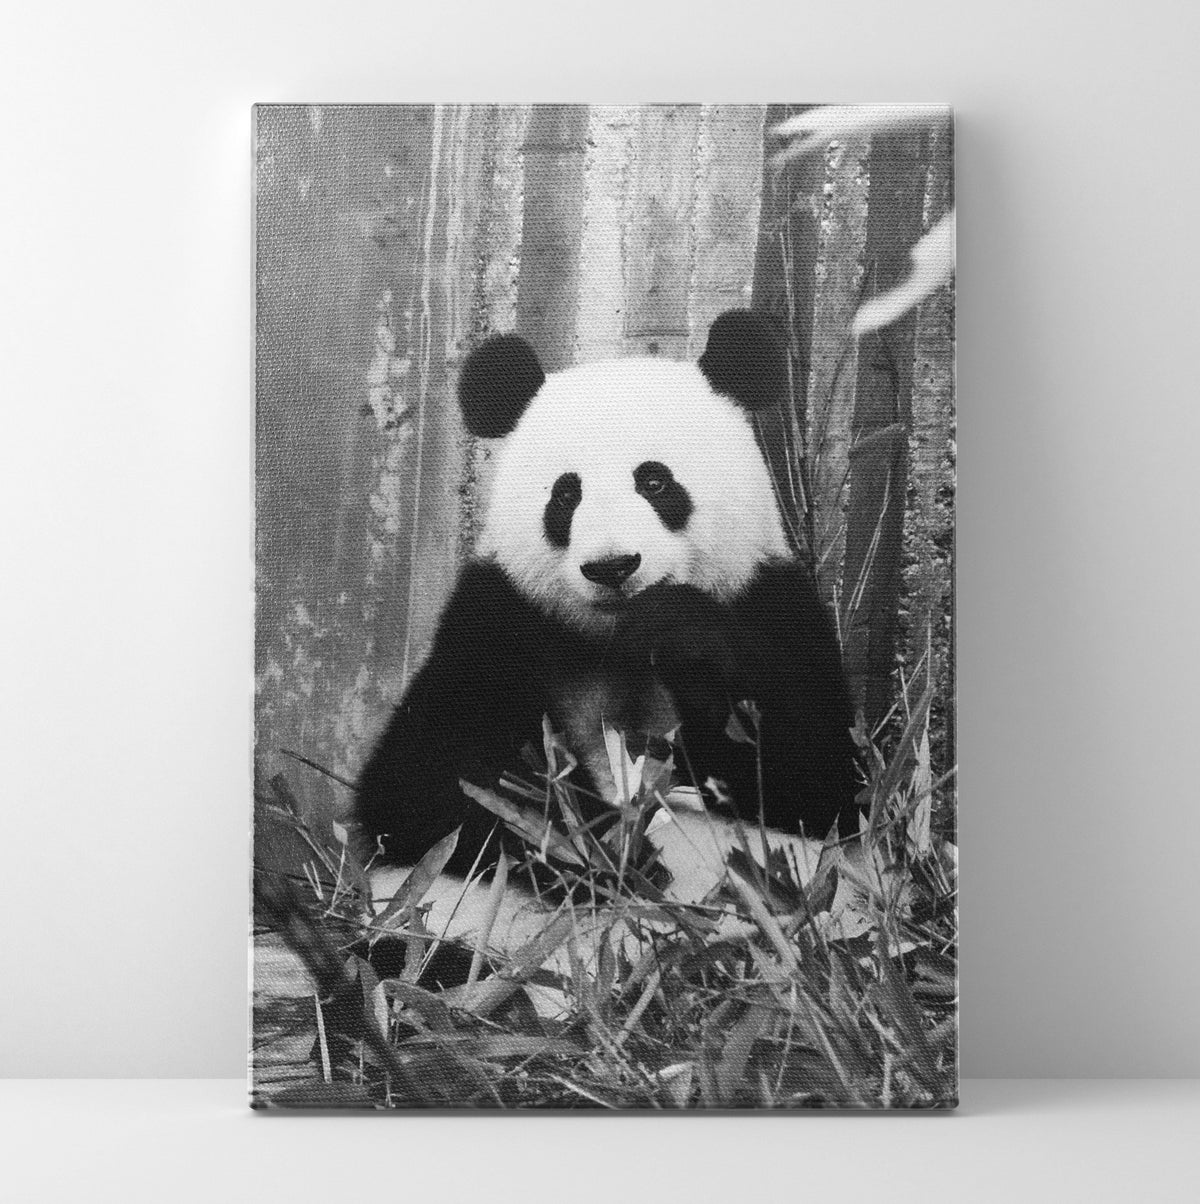 B/W Panda Prints | Far Out Art 